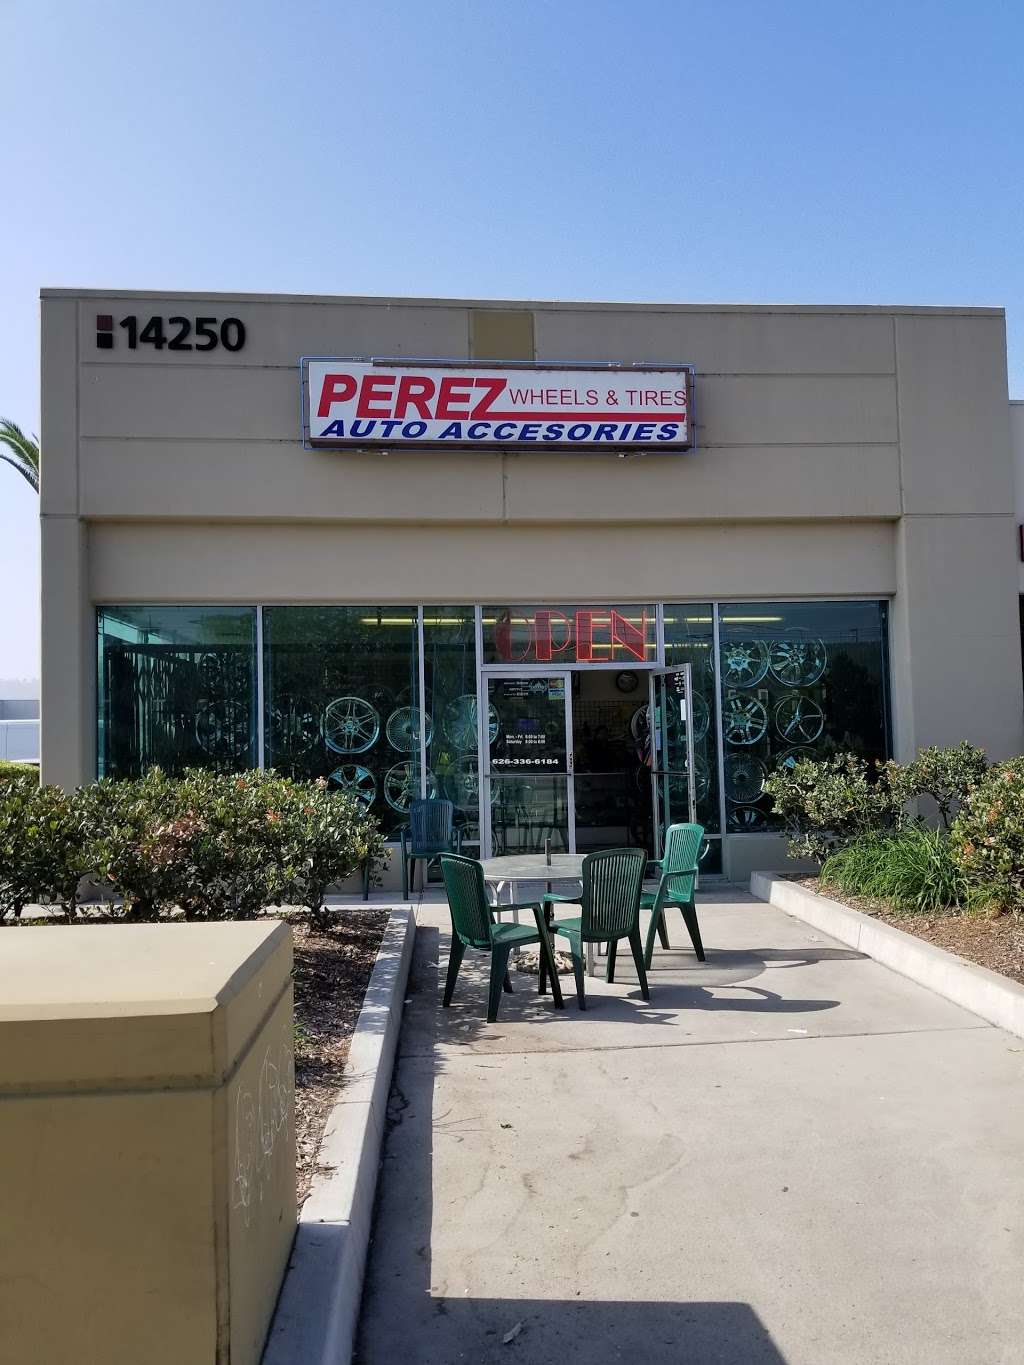 Perez Wheels & Tires | 2901, 14250 Valley Blvd, La Puente, CA 91746 | Phone: (626) 336-6184